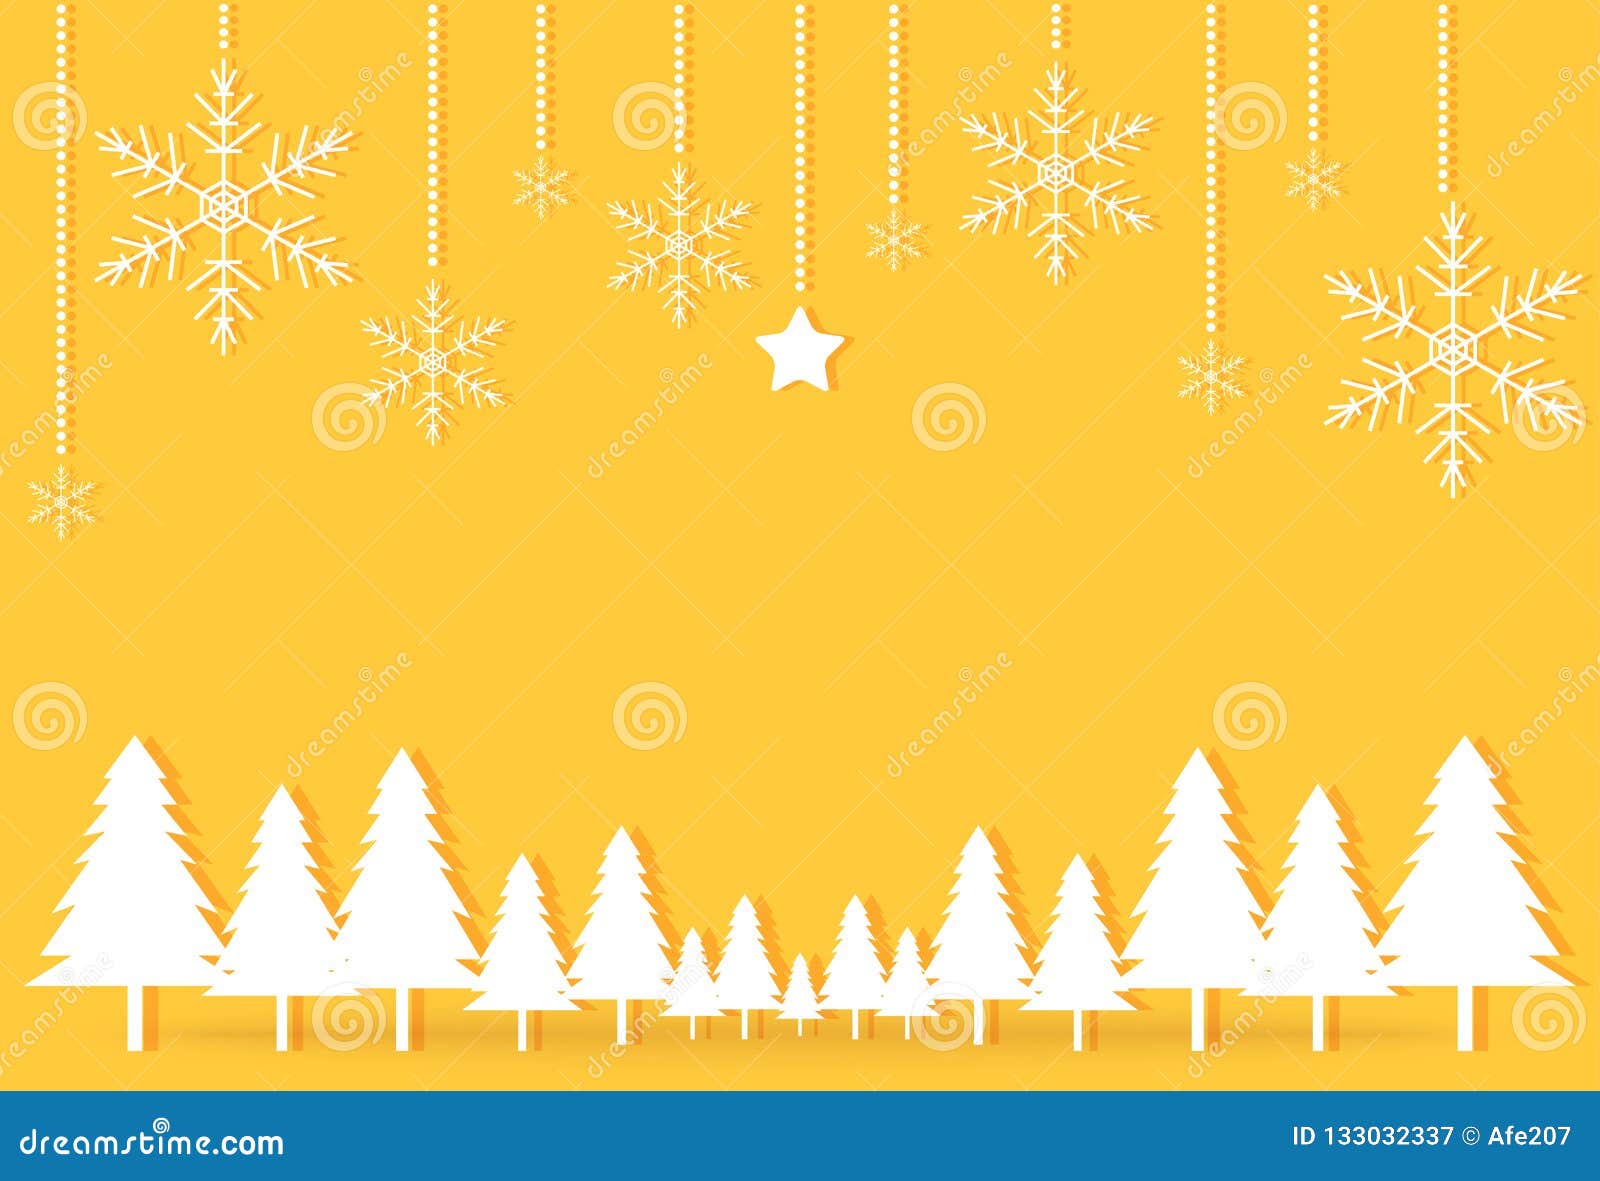 Màu vàng này thật tuyệt vời và mang lại niềm vui cho đêm Giáng sinh. Hãy cùng xem các hình ảnh về màu vàng để tìm những ý tưởng trang trí Noel mang đậm phong cách của bạn. ????????